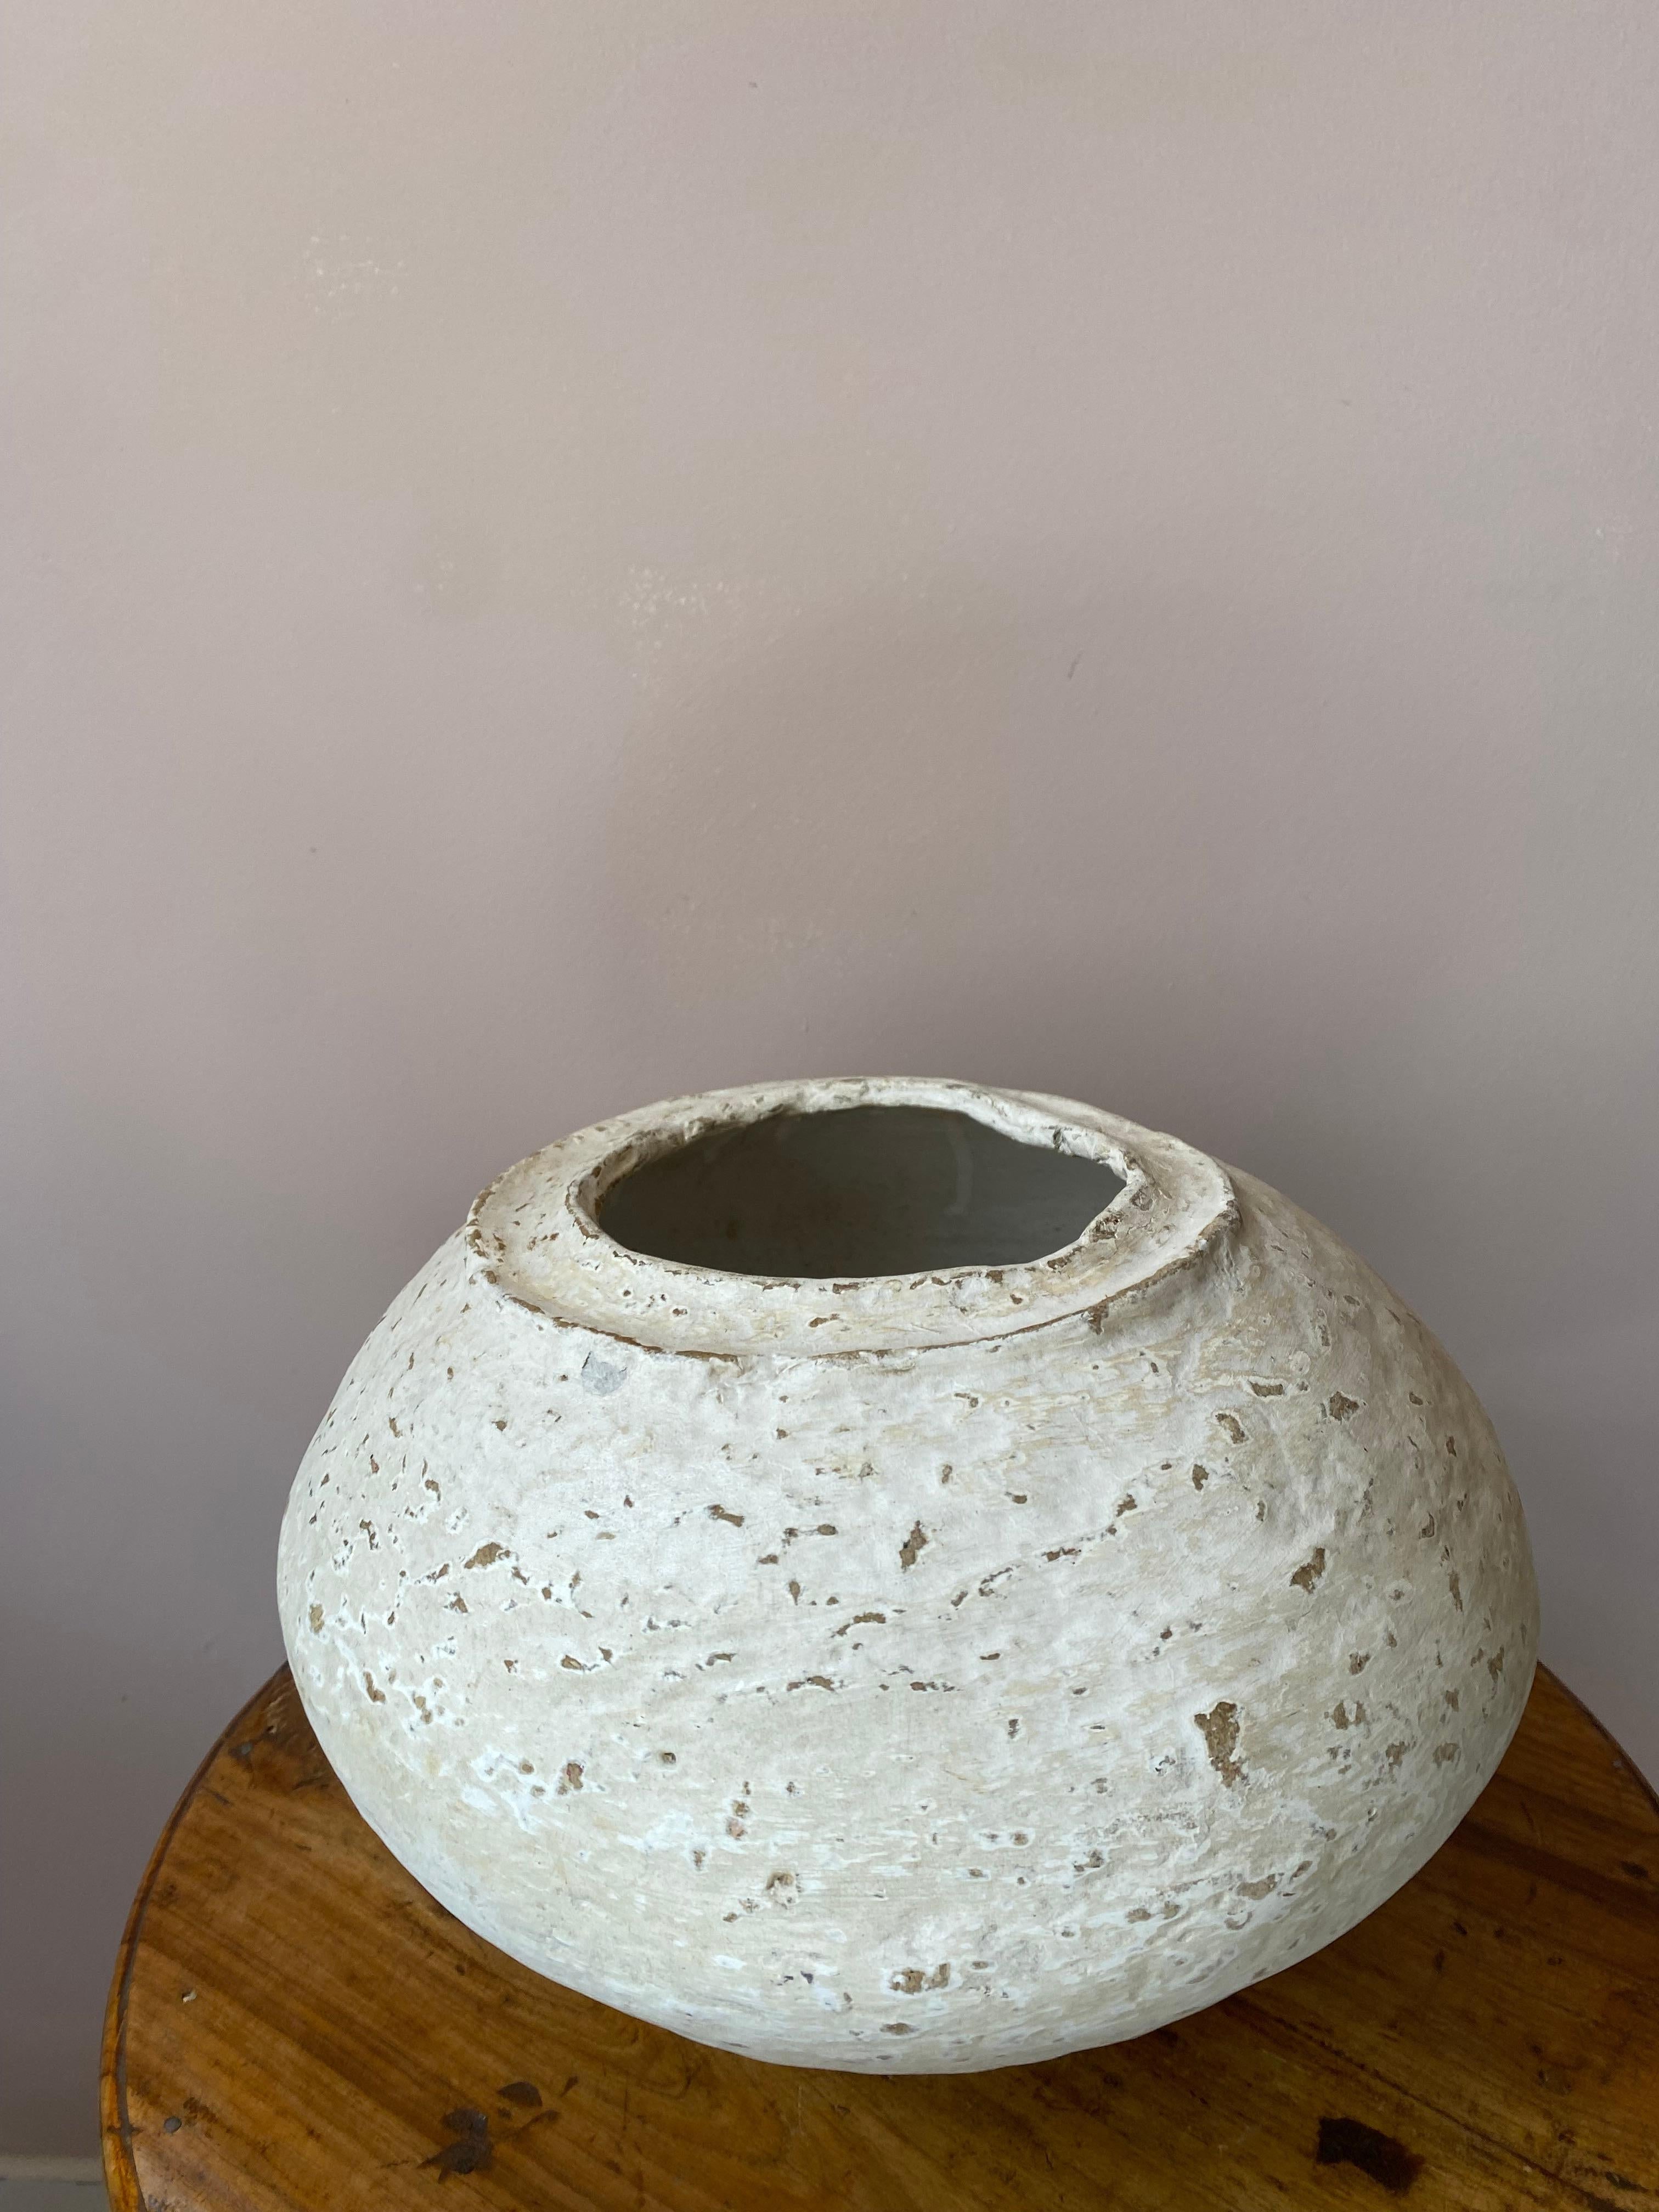 Ce vase vintage en papier mâché provient du Rajasthan, où le papier mâché a été utilisé pour la première fois pour sa qualité d'isolation. 
Sa couleur blanche en fait un objet très décoratif.